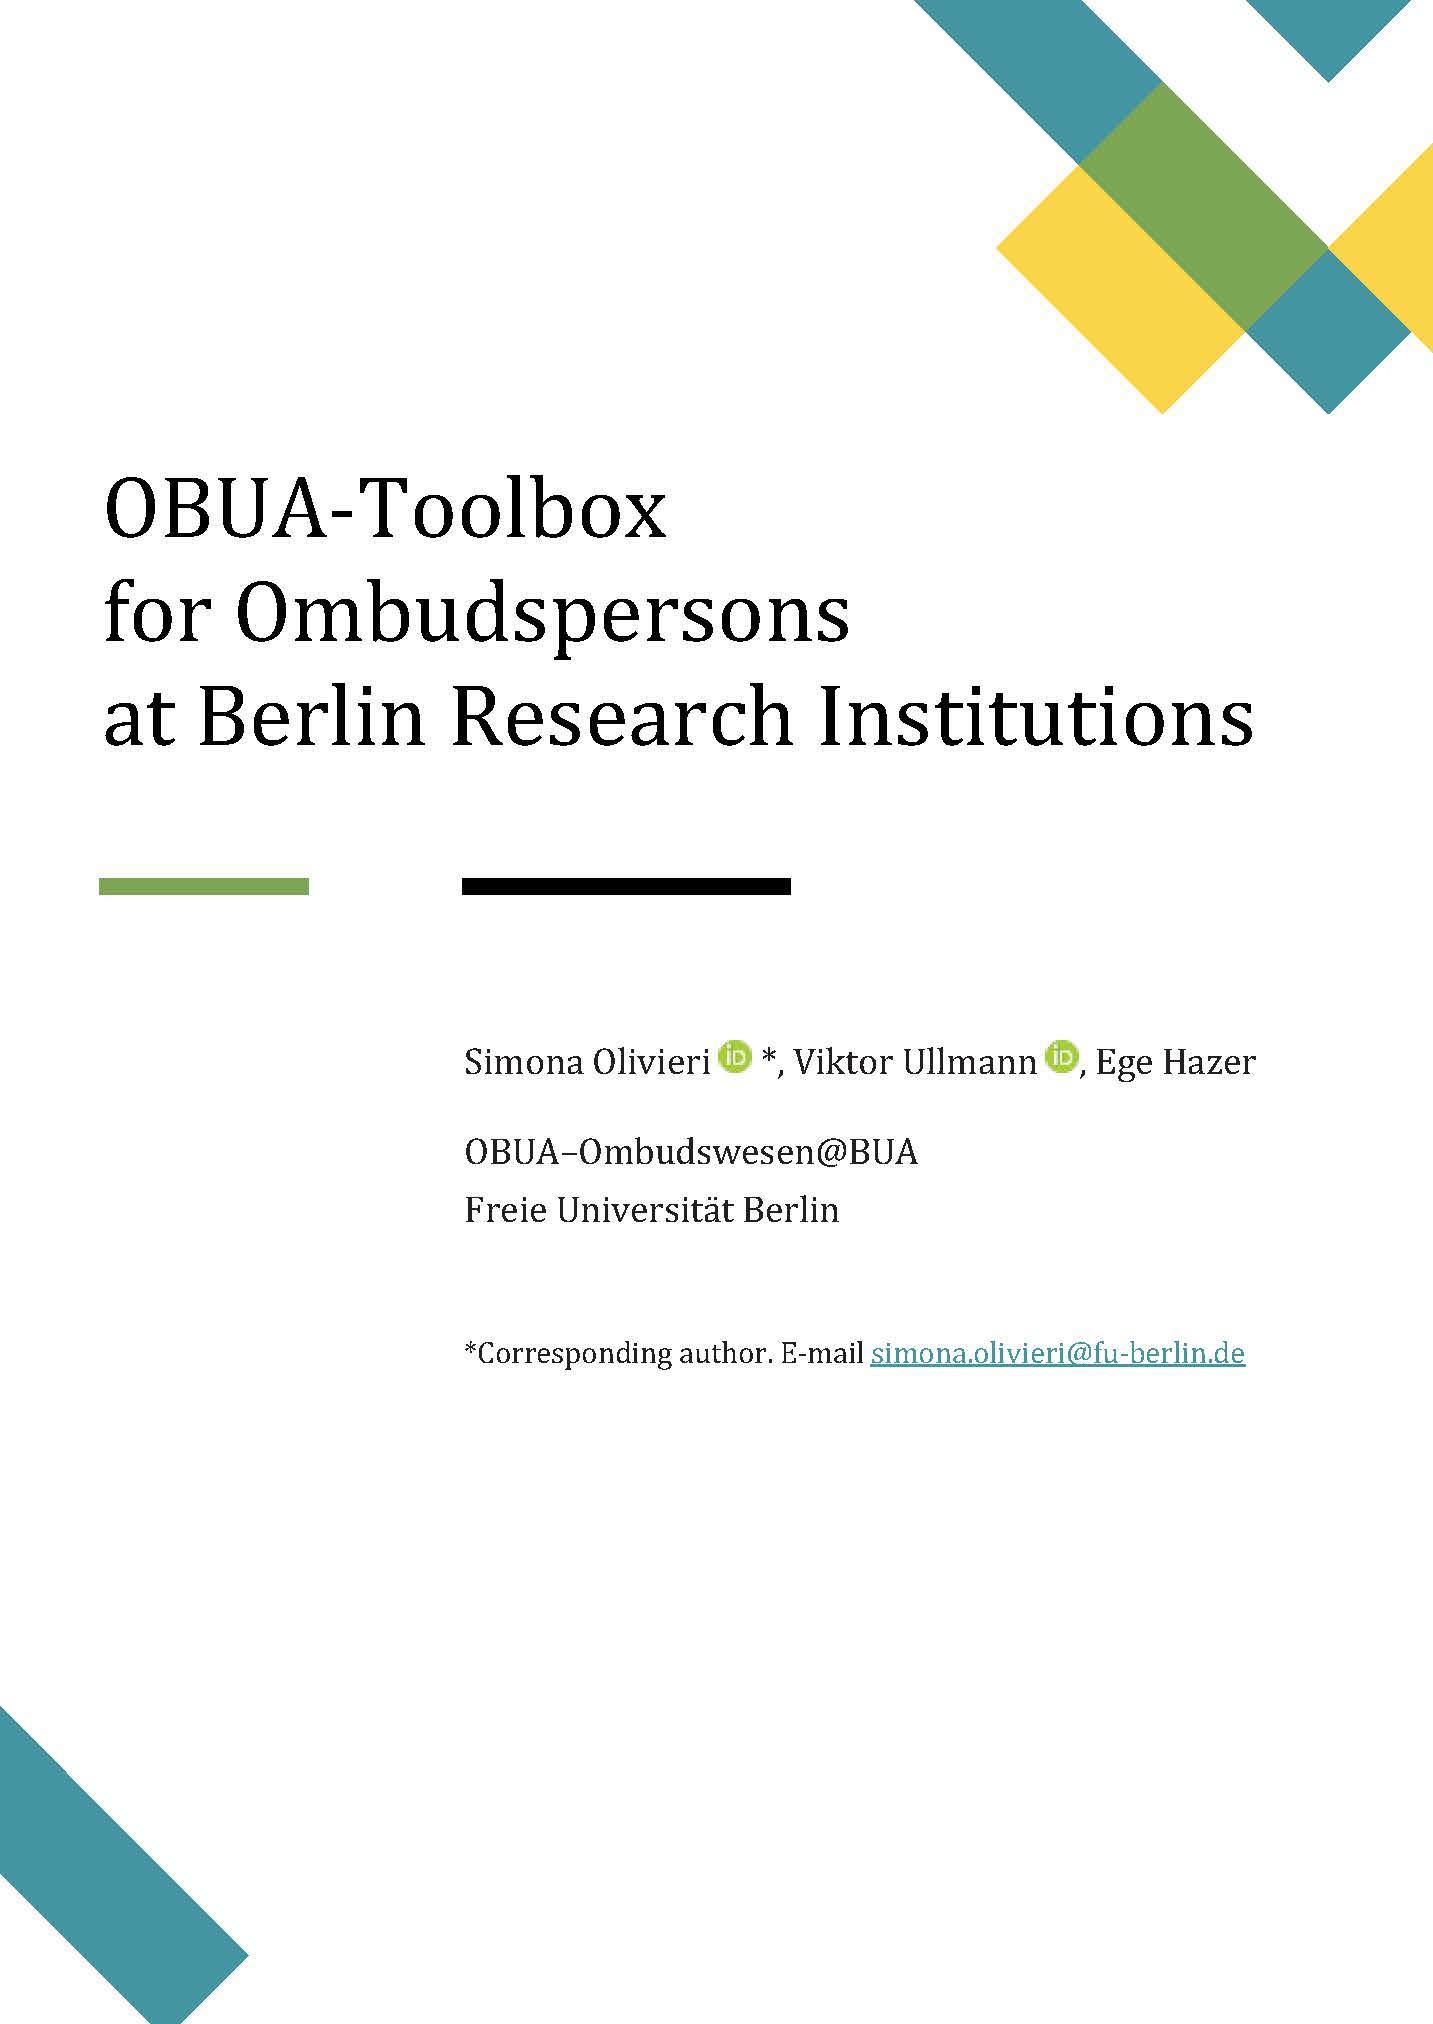 OBUA-Toolbox_EN